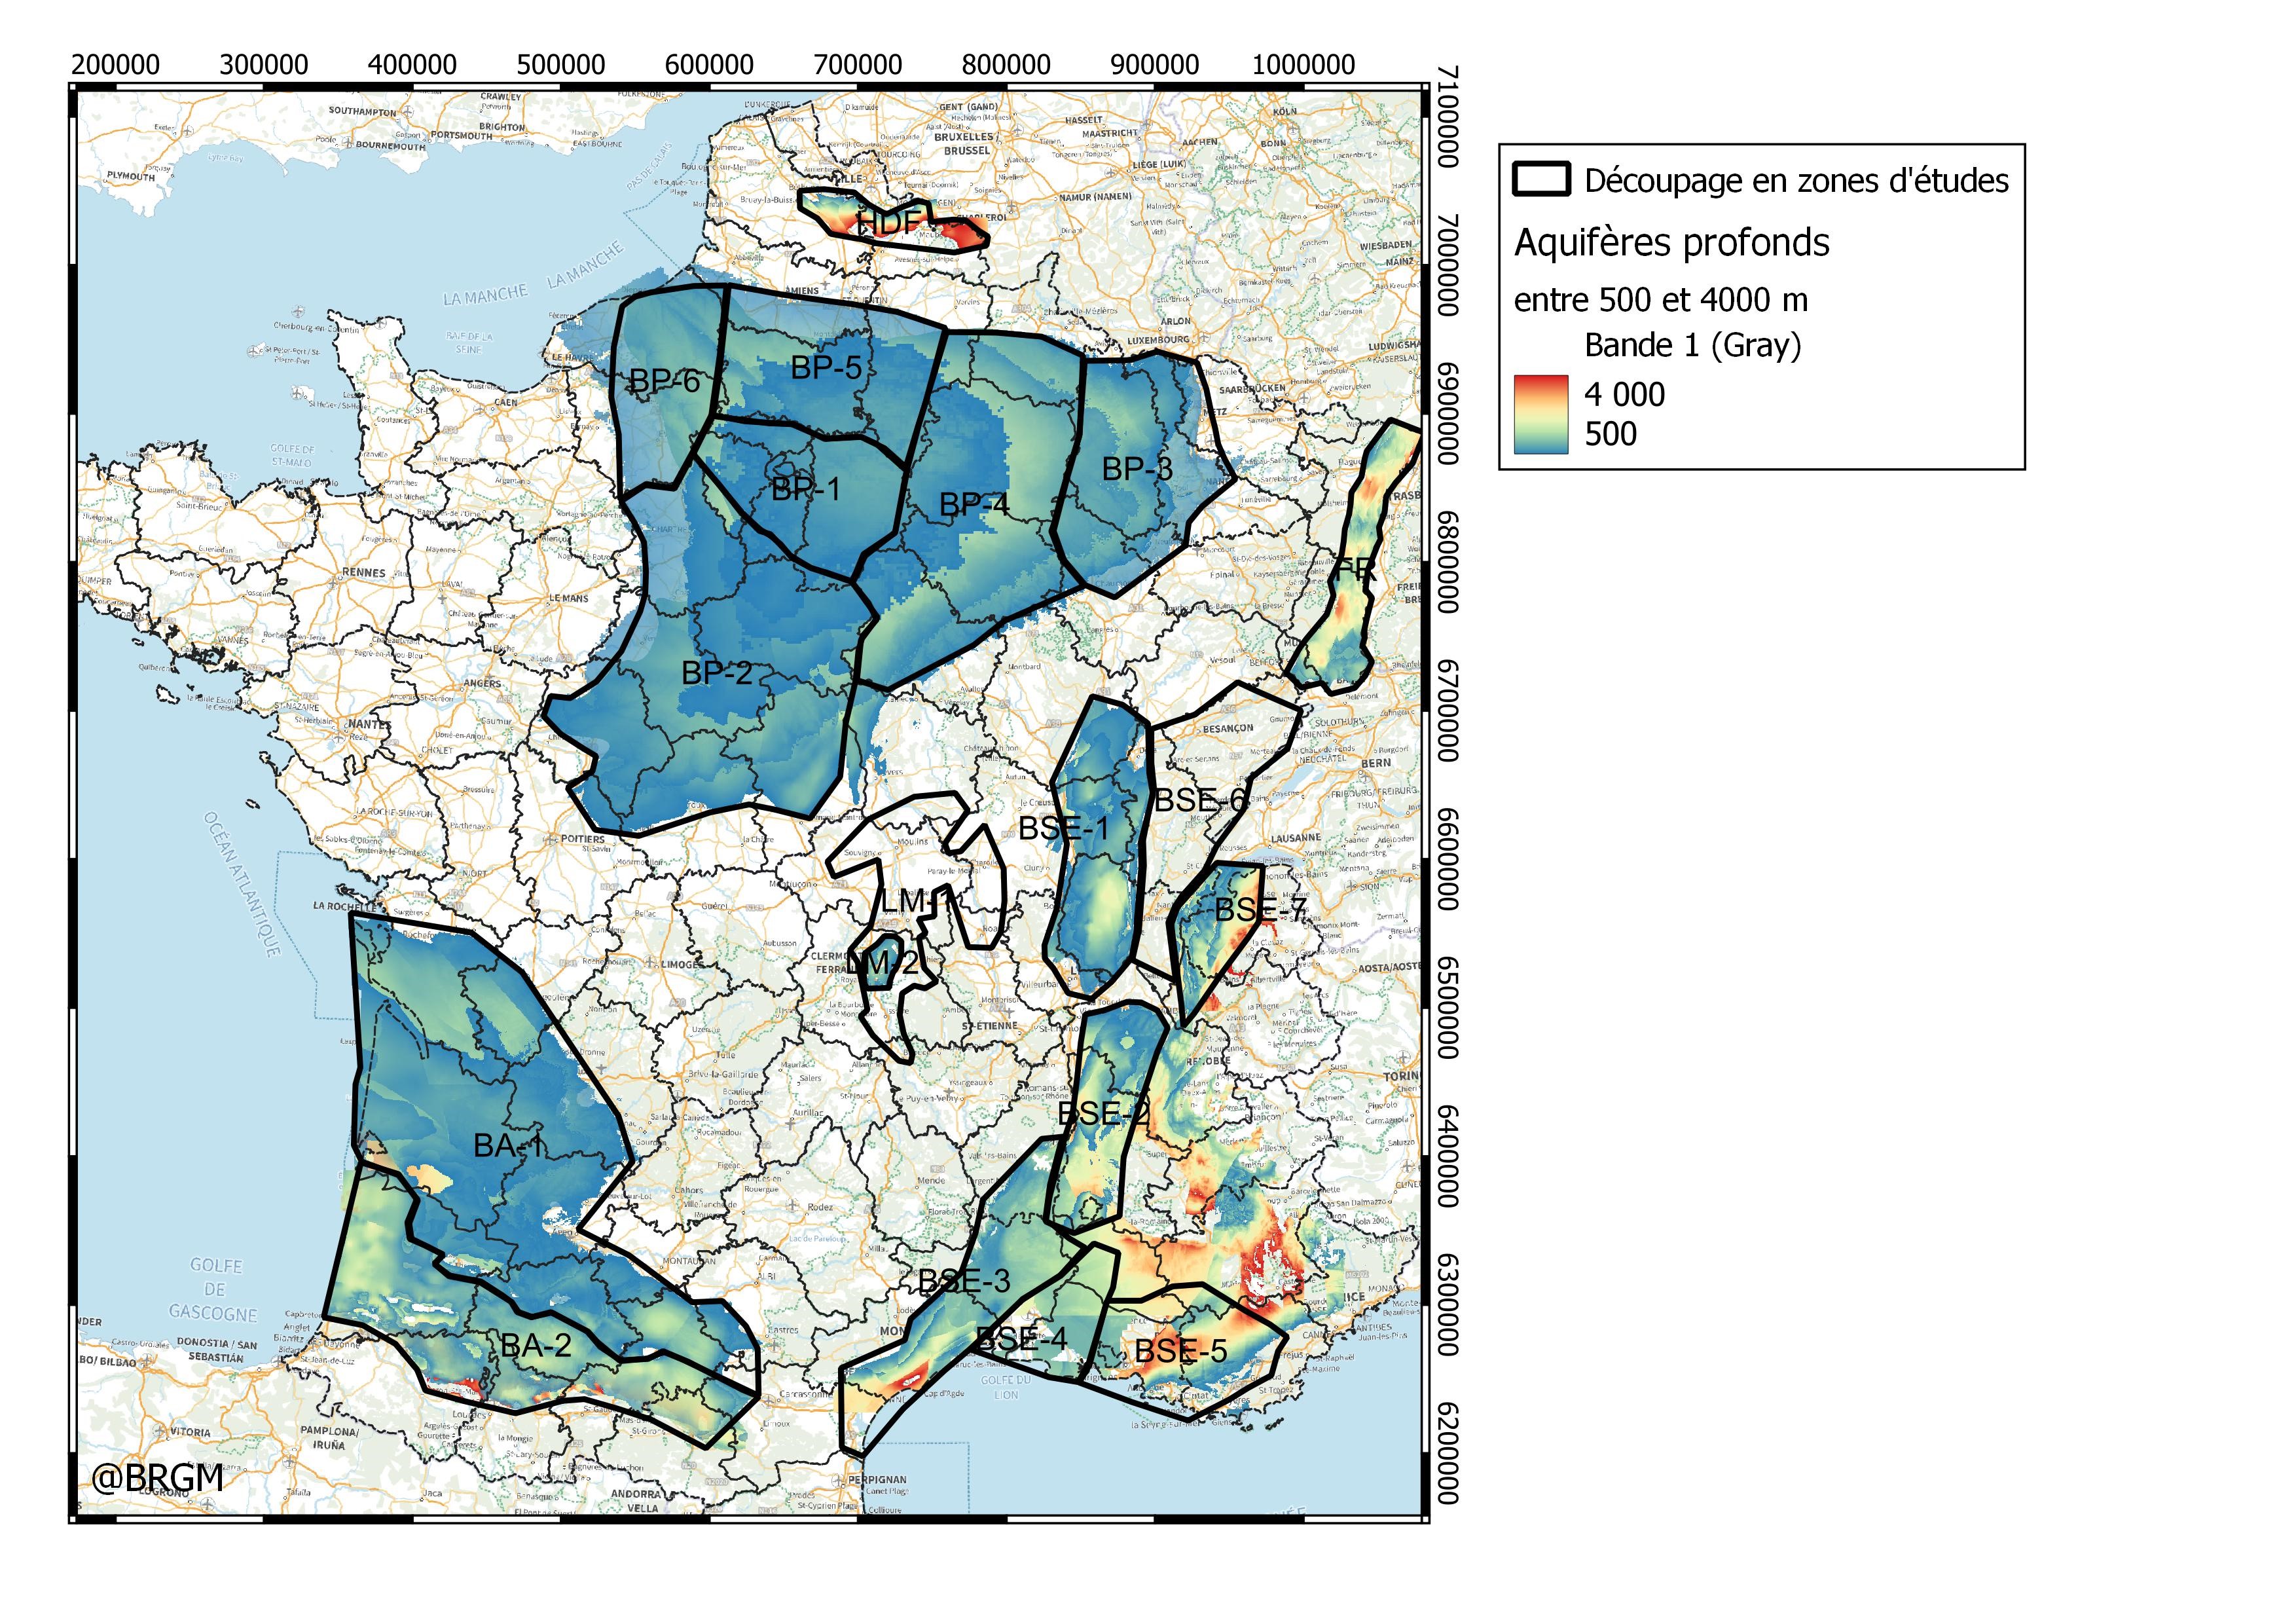 Compn inventaire, proposition de découpage des bassins en zones d’études ©BRGM